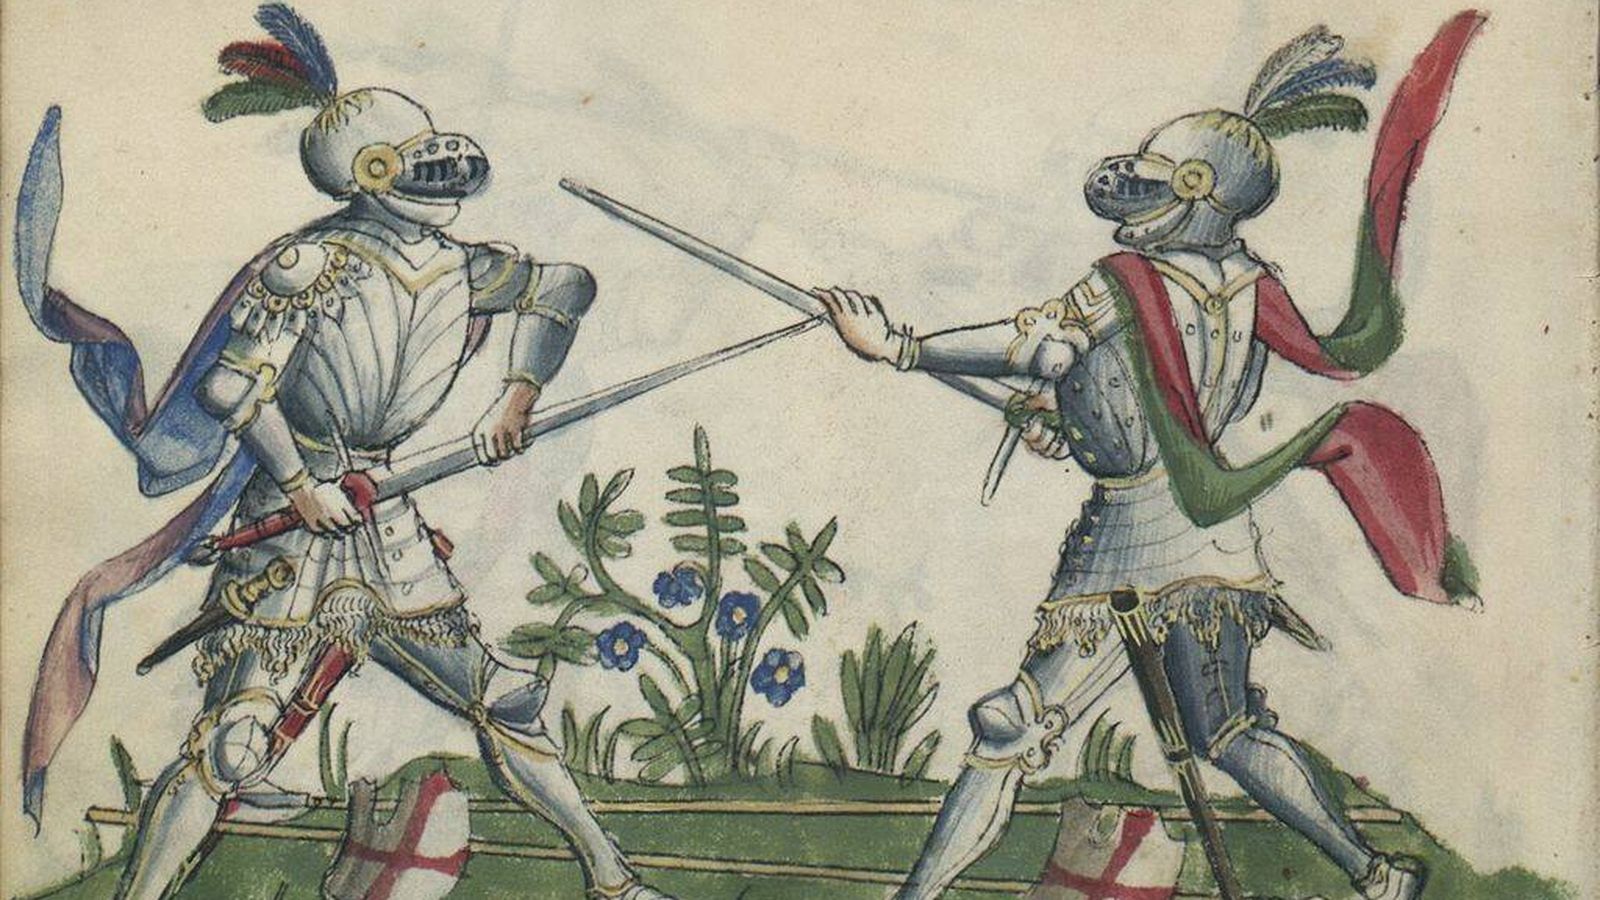 Arte del códice de esgrima medieval Gladiatoria en el que se muestra la esgrima de espada larga armada.